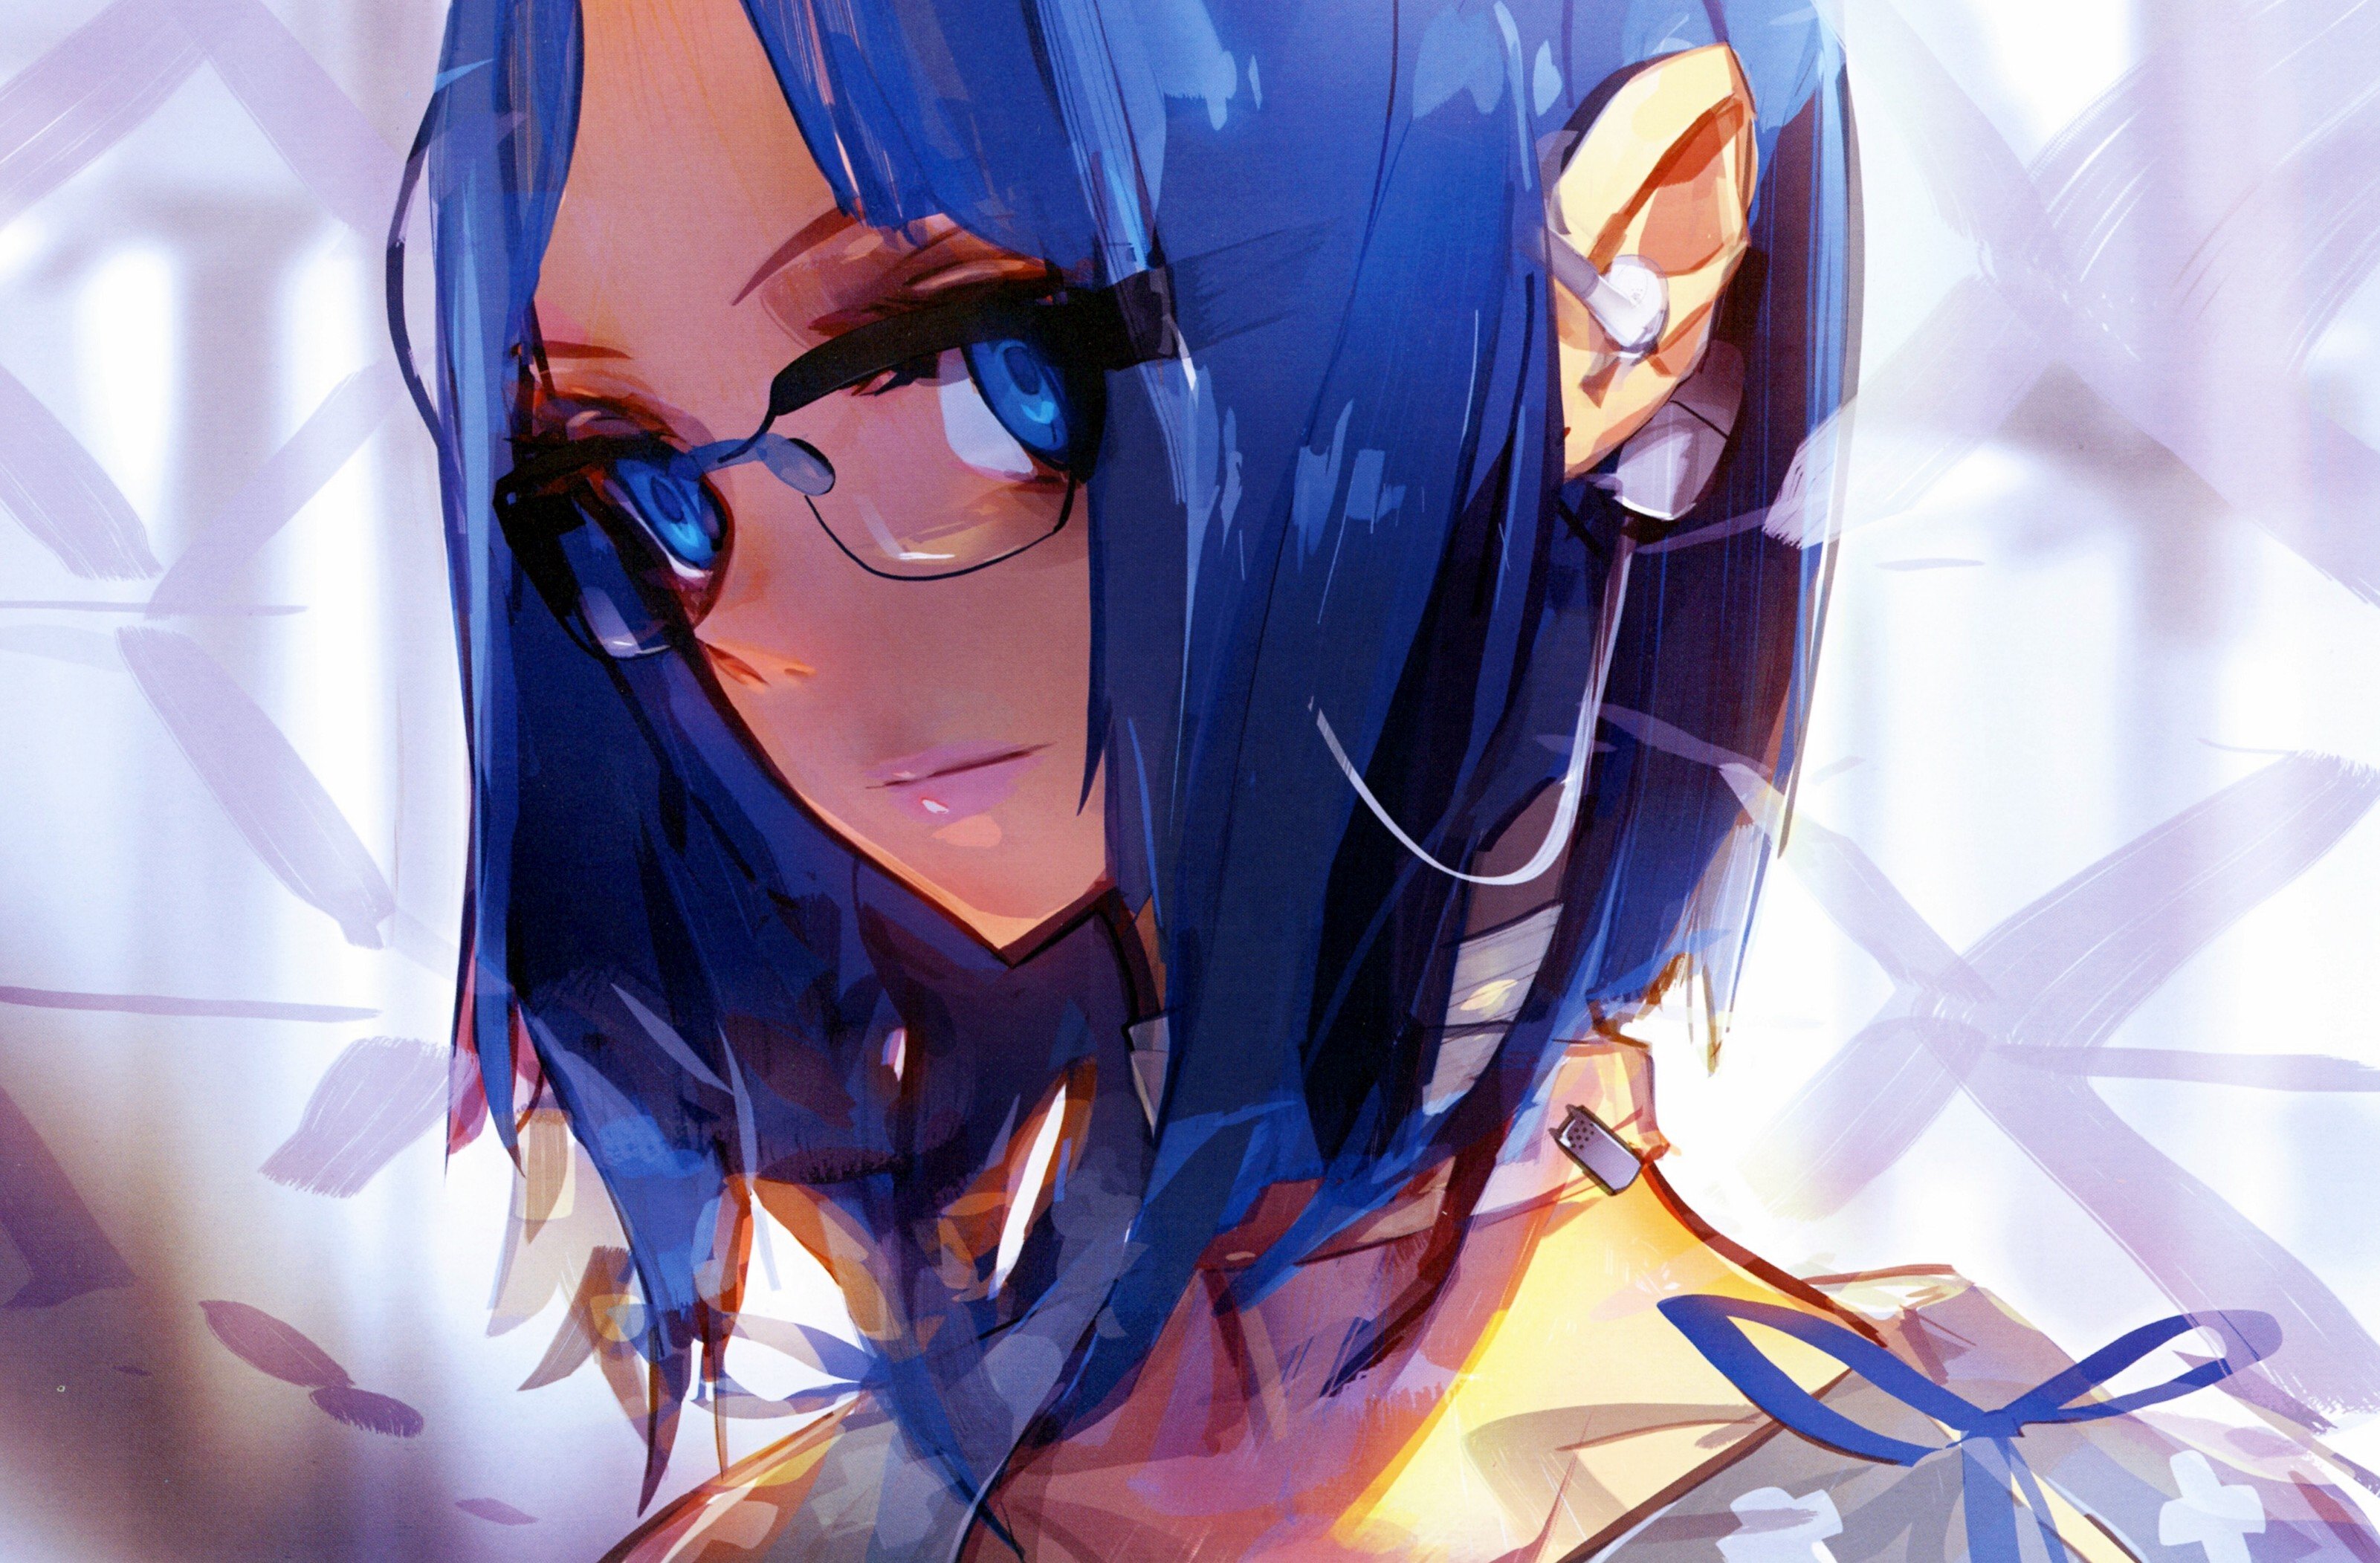 Anime Girl Black Hair Glasses